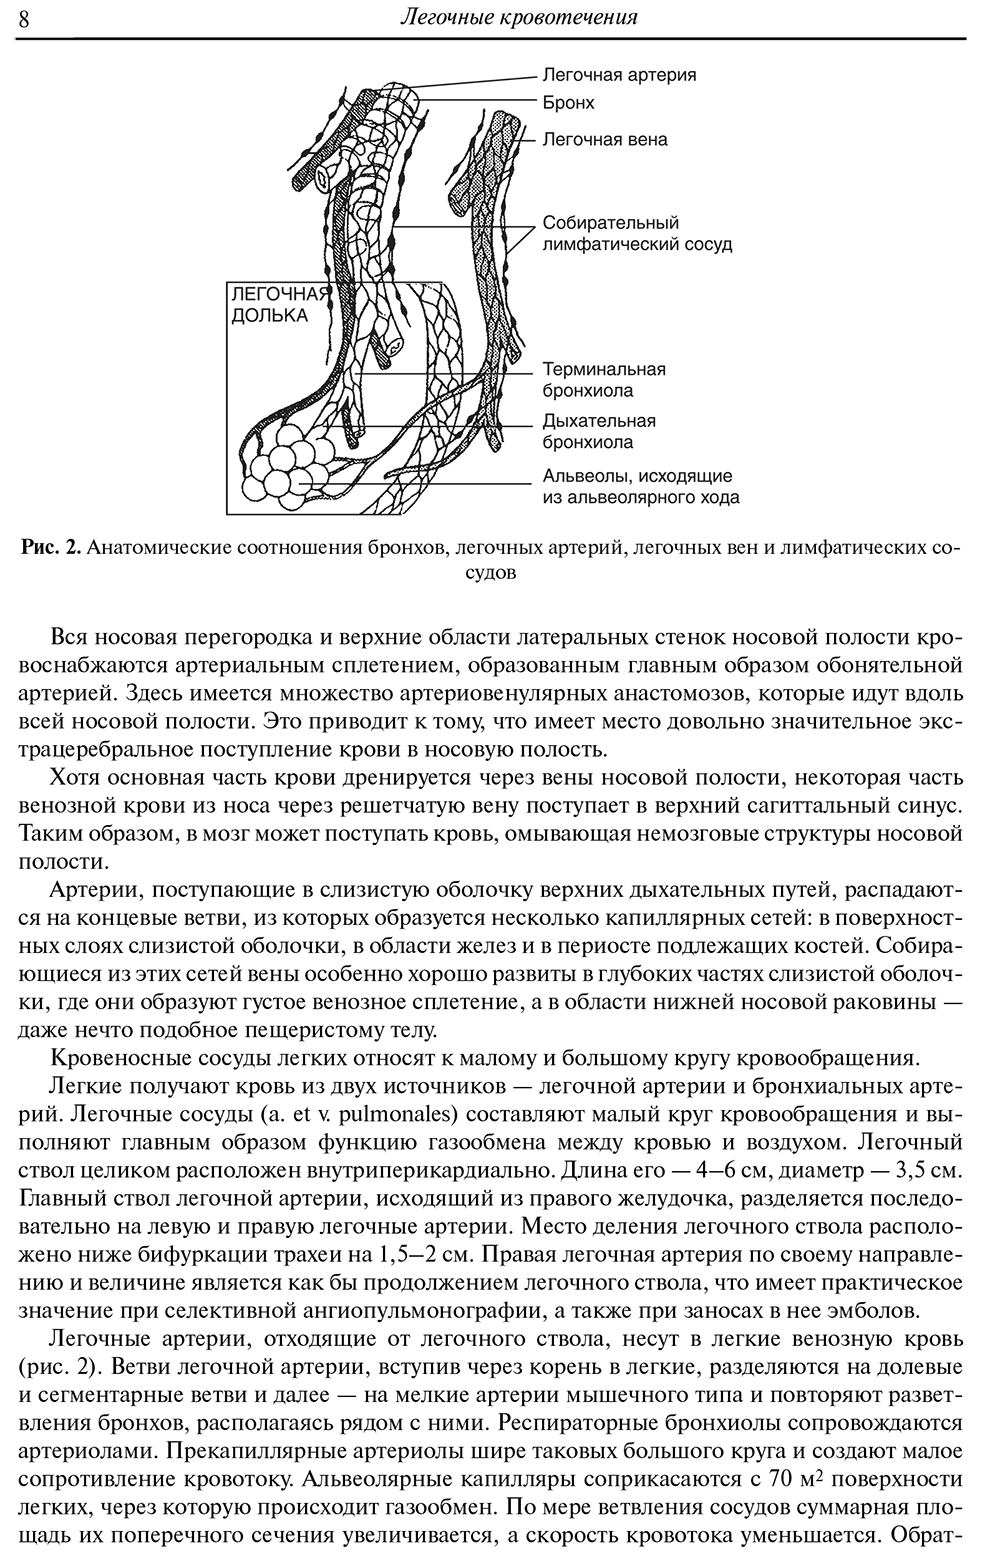 Анатомические соотношения бронхов, легочных артерий